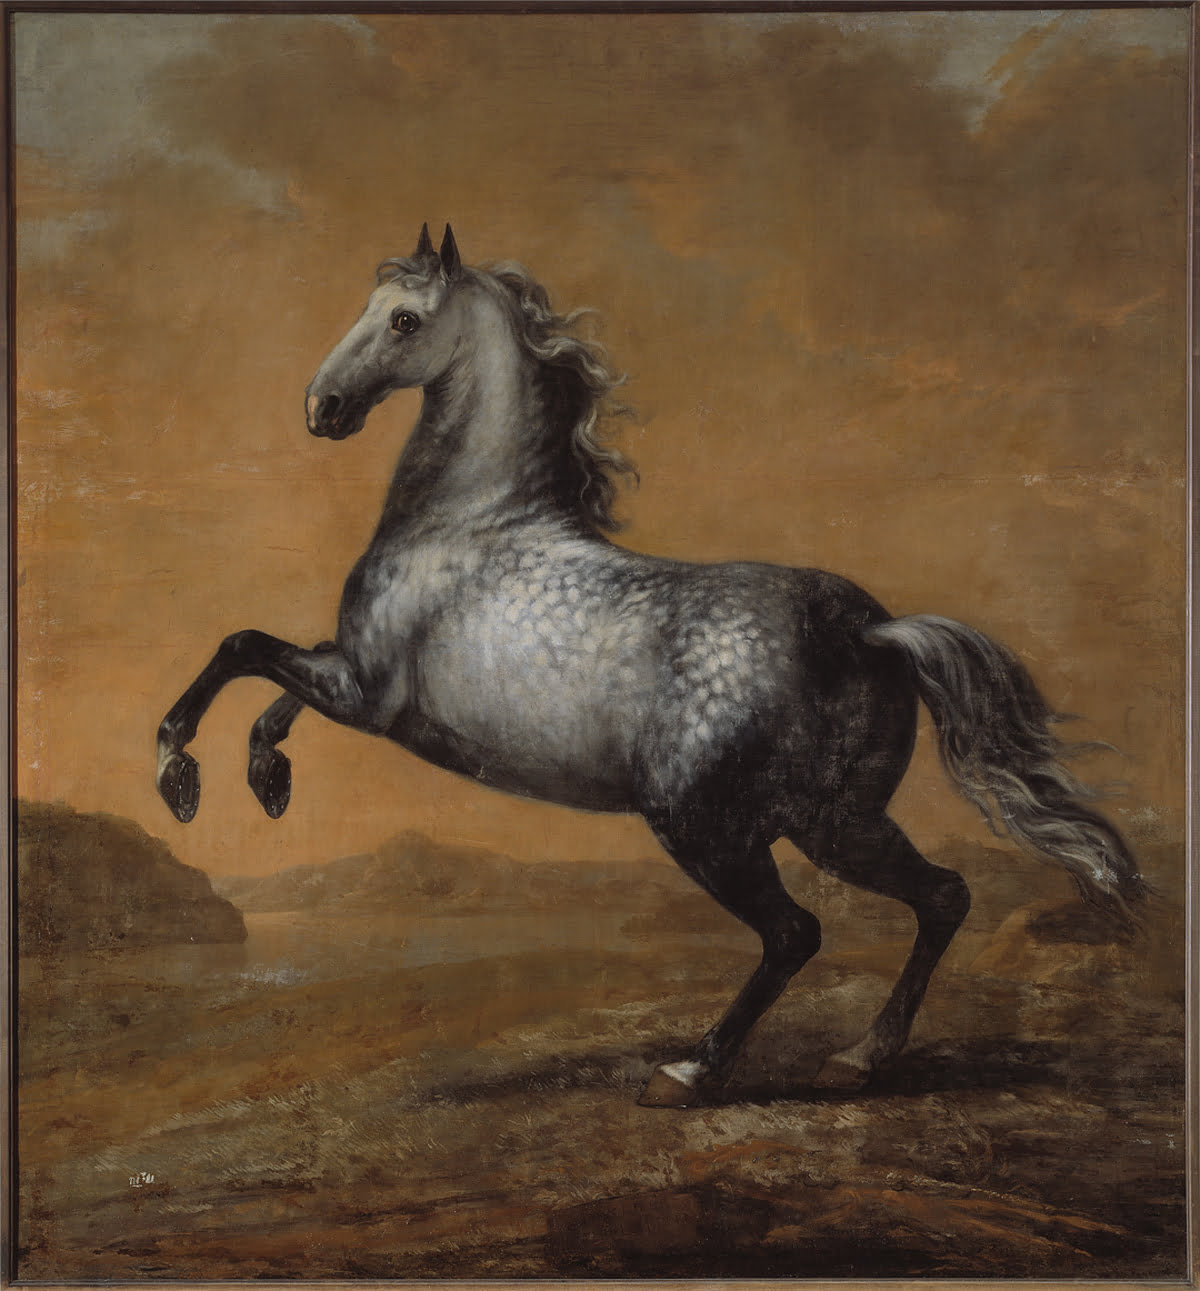 Målning av Karl XI:s livhäst Den Lille Engländaren stegrandes i ett landskap.